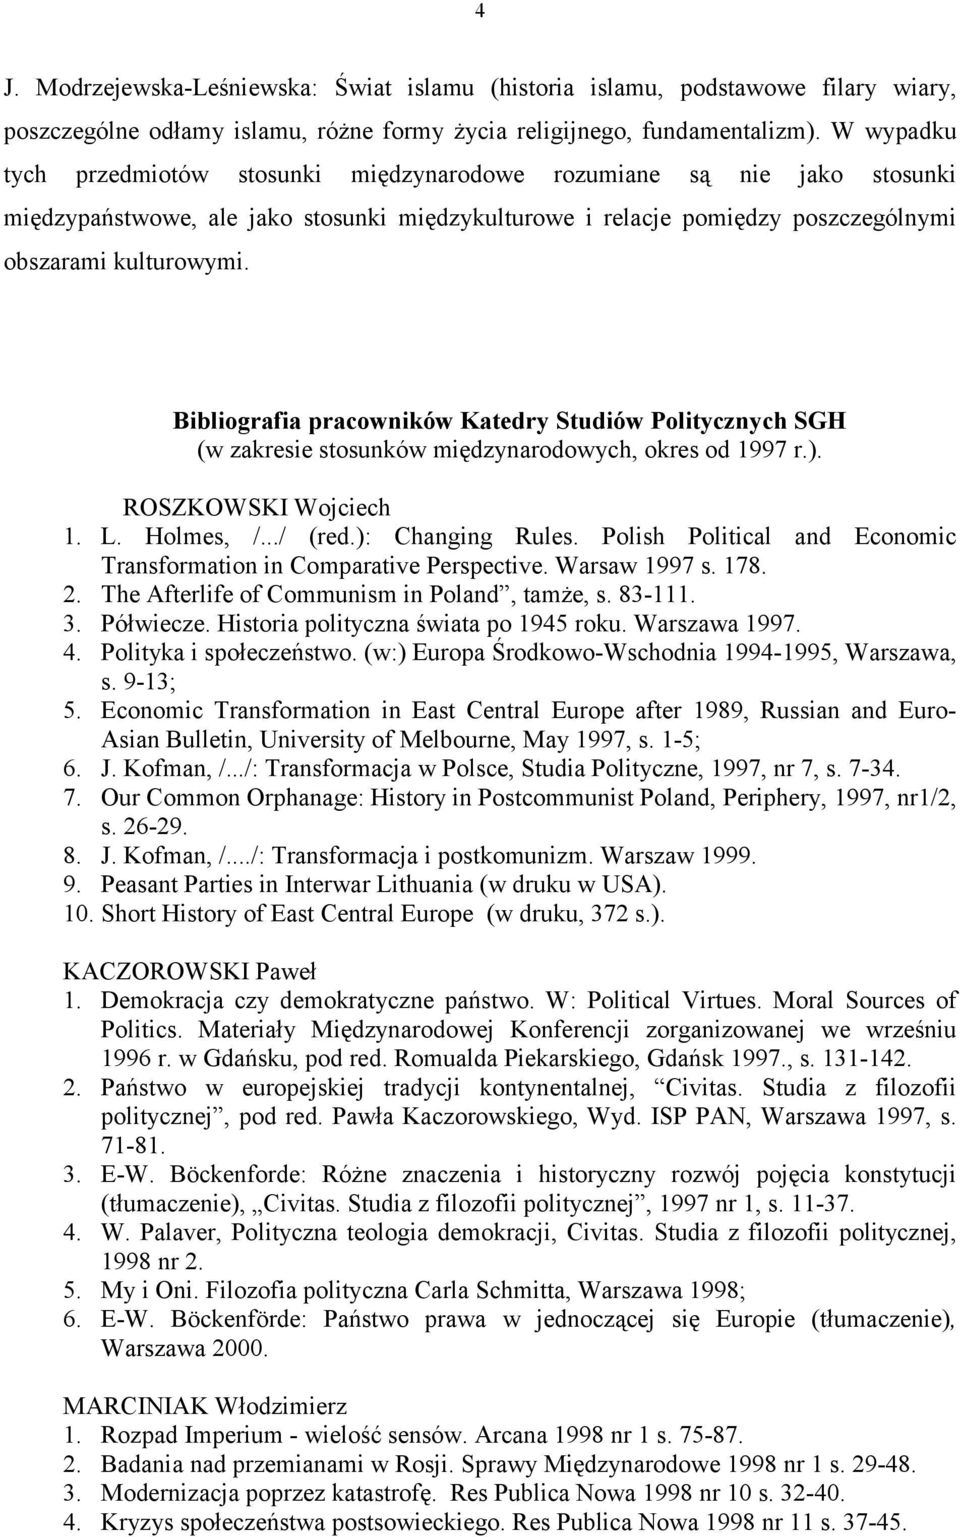 Bibliografia pracowników Katedry Studiów Politycznych SGH (w zakresie stosunków międzynarodowych, okres od 1997 r.). ROSZKOWSKI Wojciech 1. L. Holmes, /.../ (red.): Changing Rules.